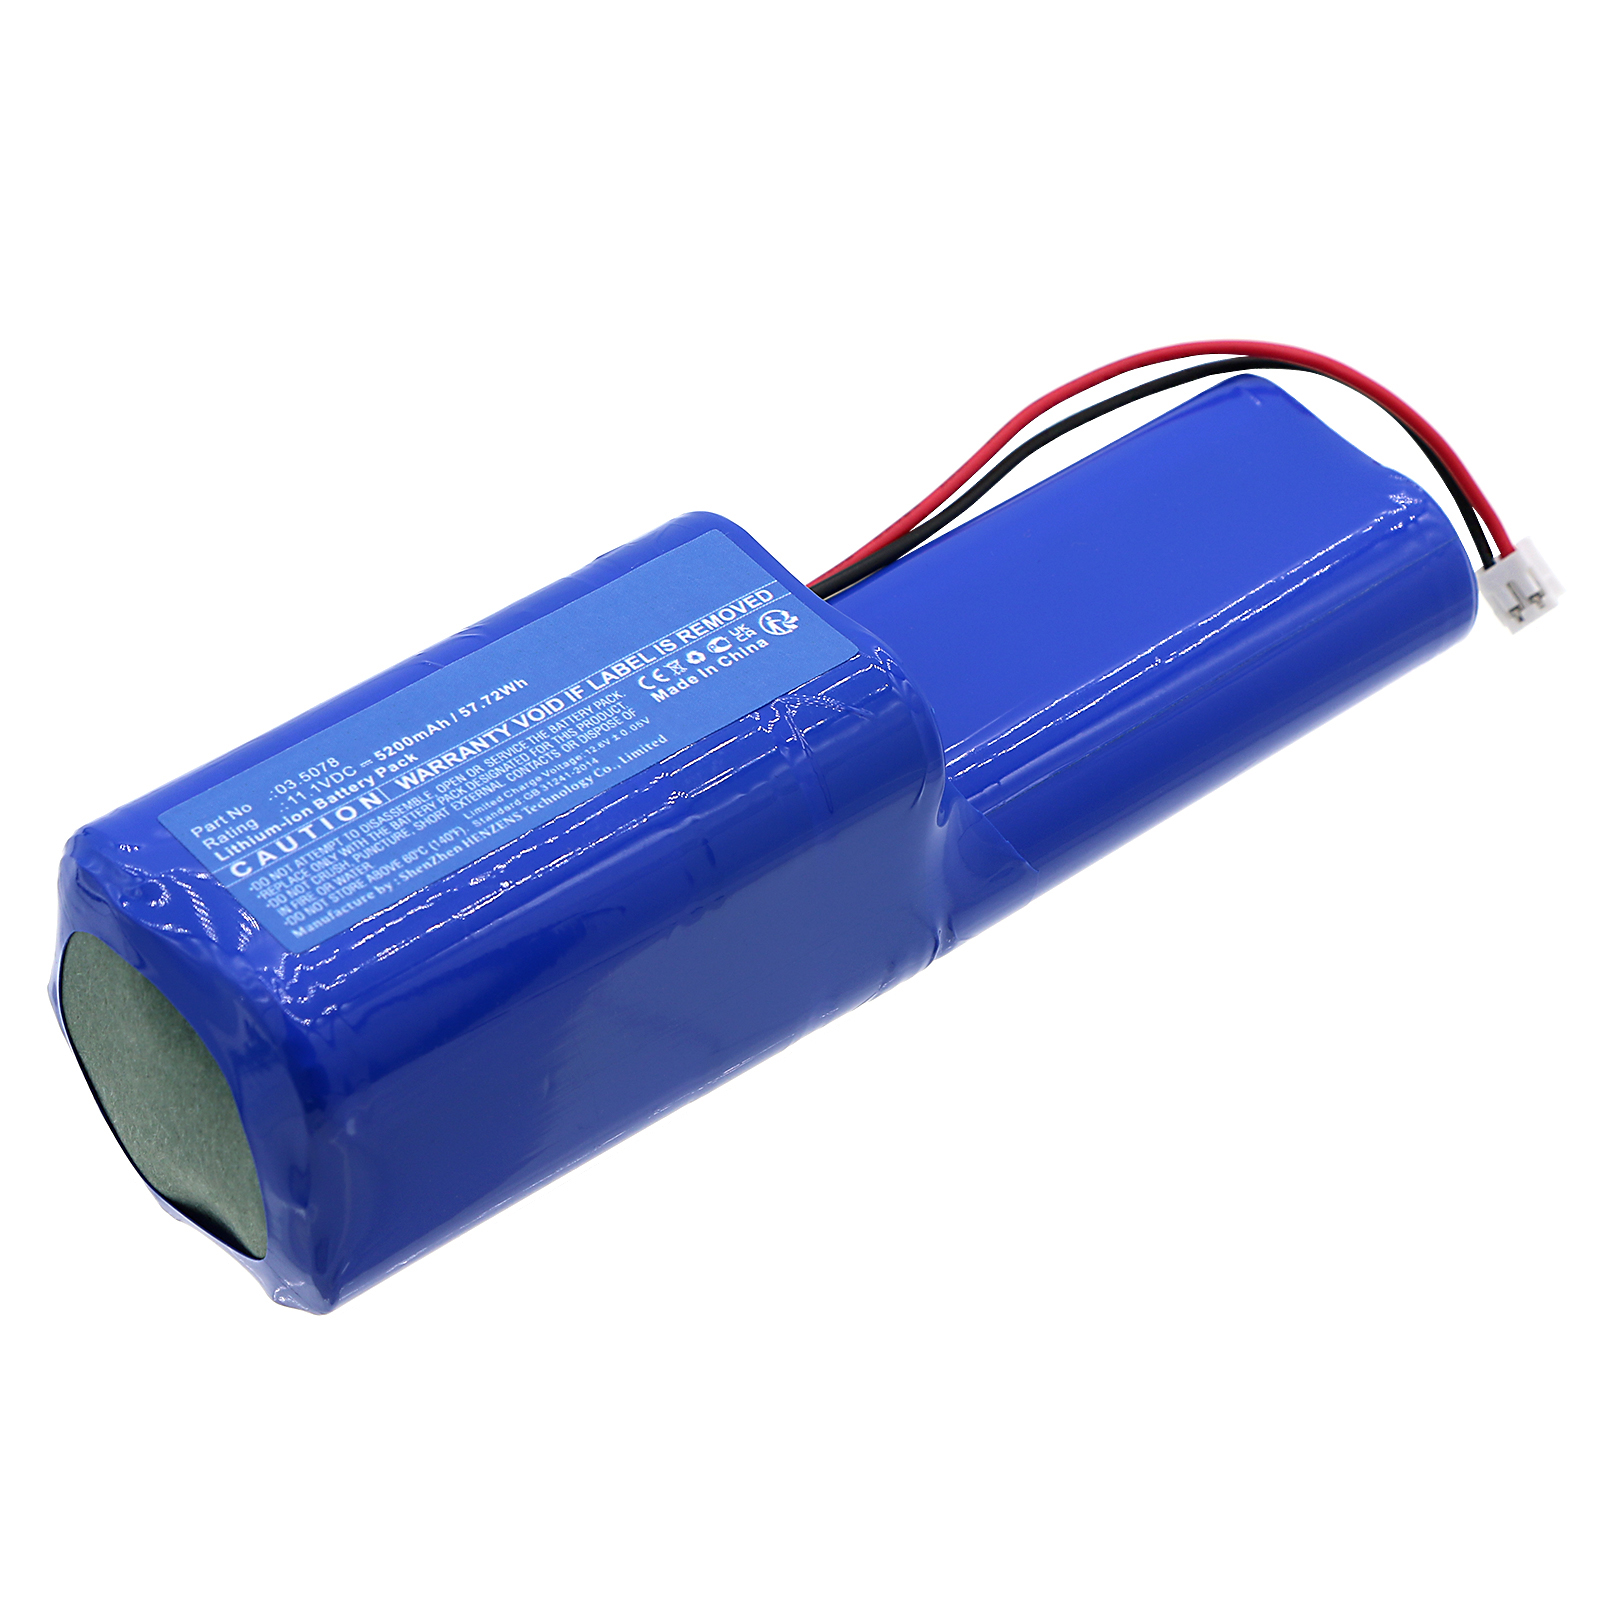 Batteries for SCANGRIPFlashlight